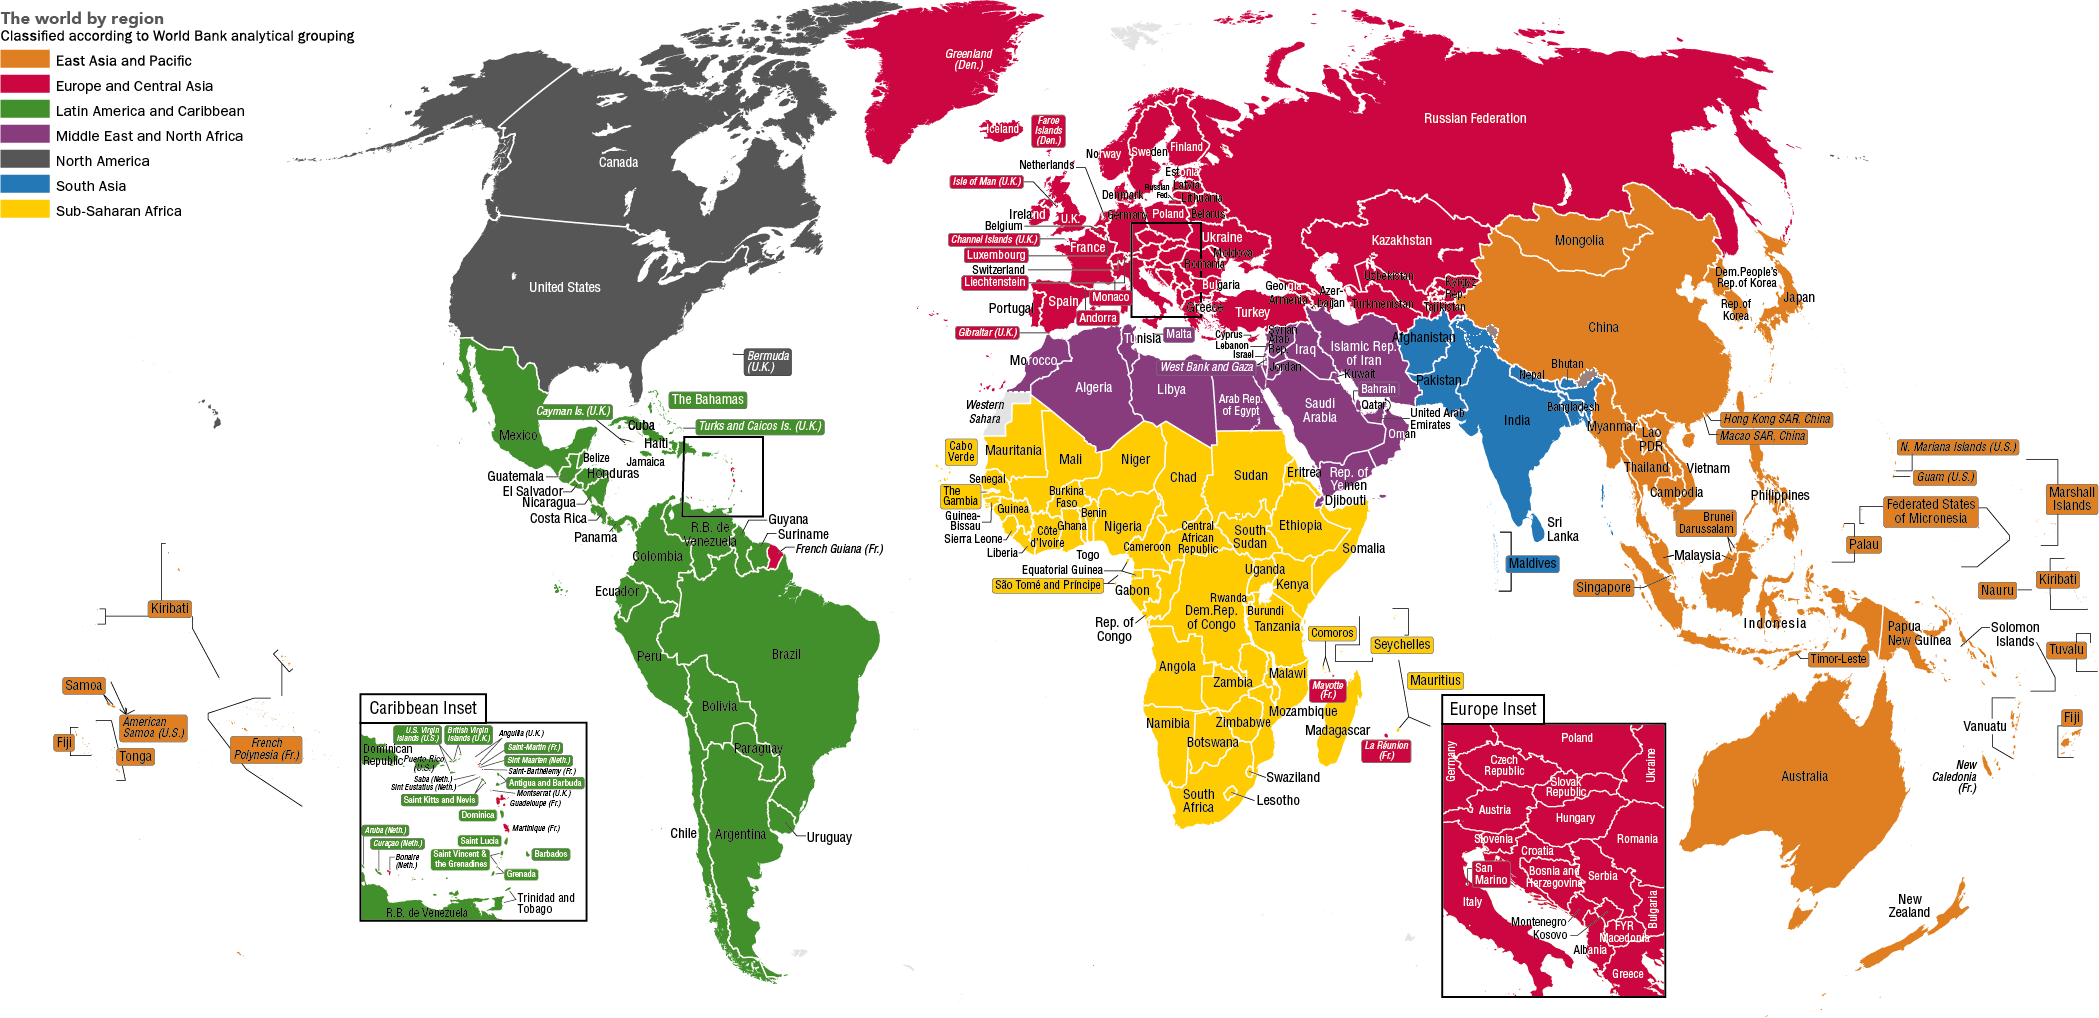 world-by-region-wdi-2017